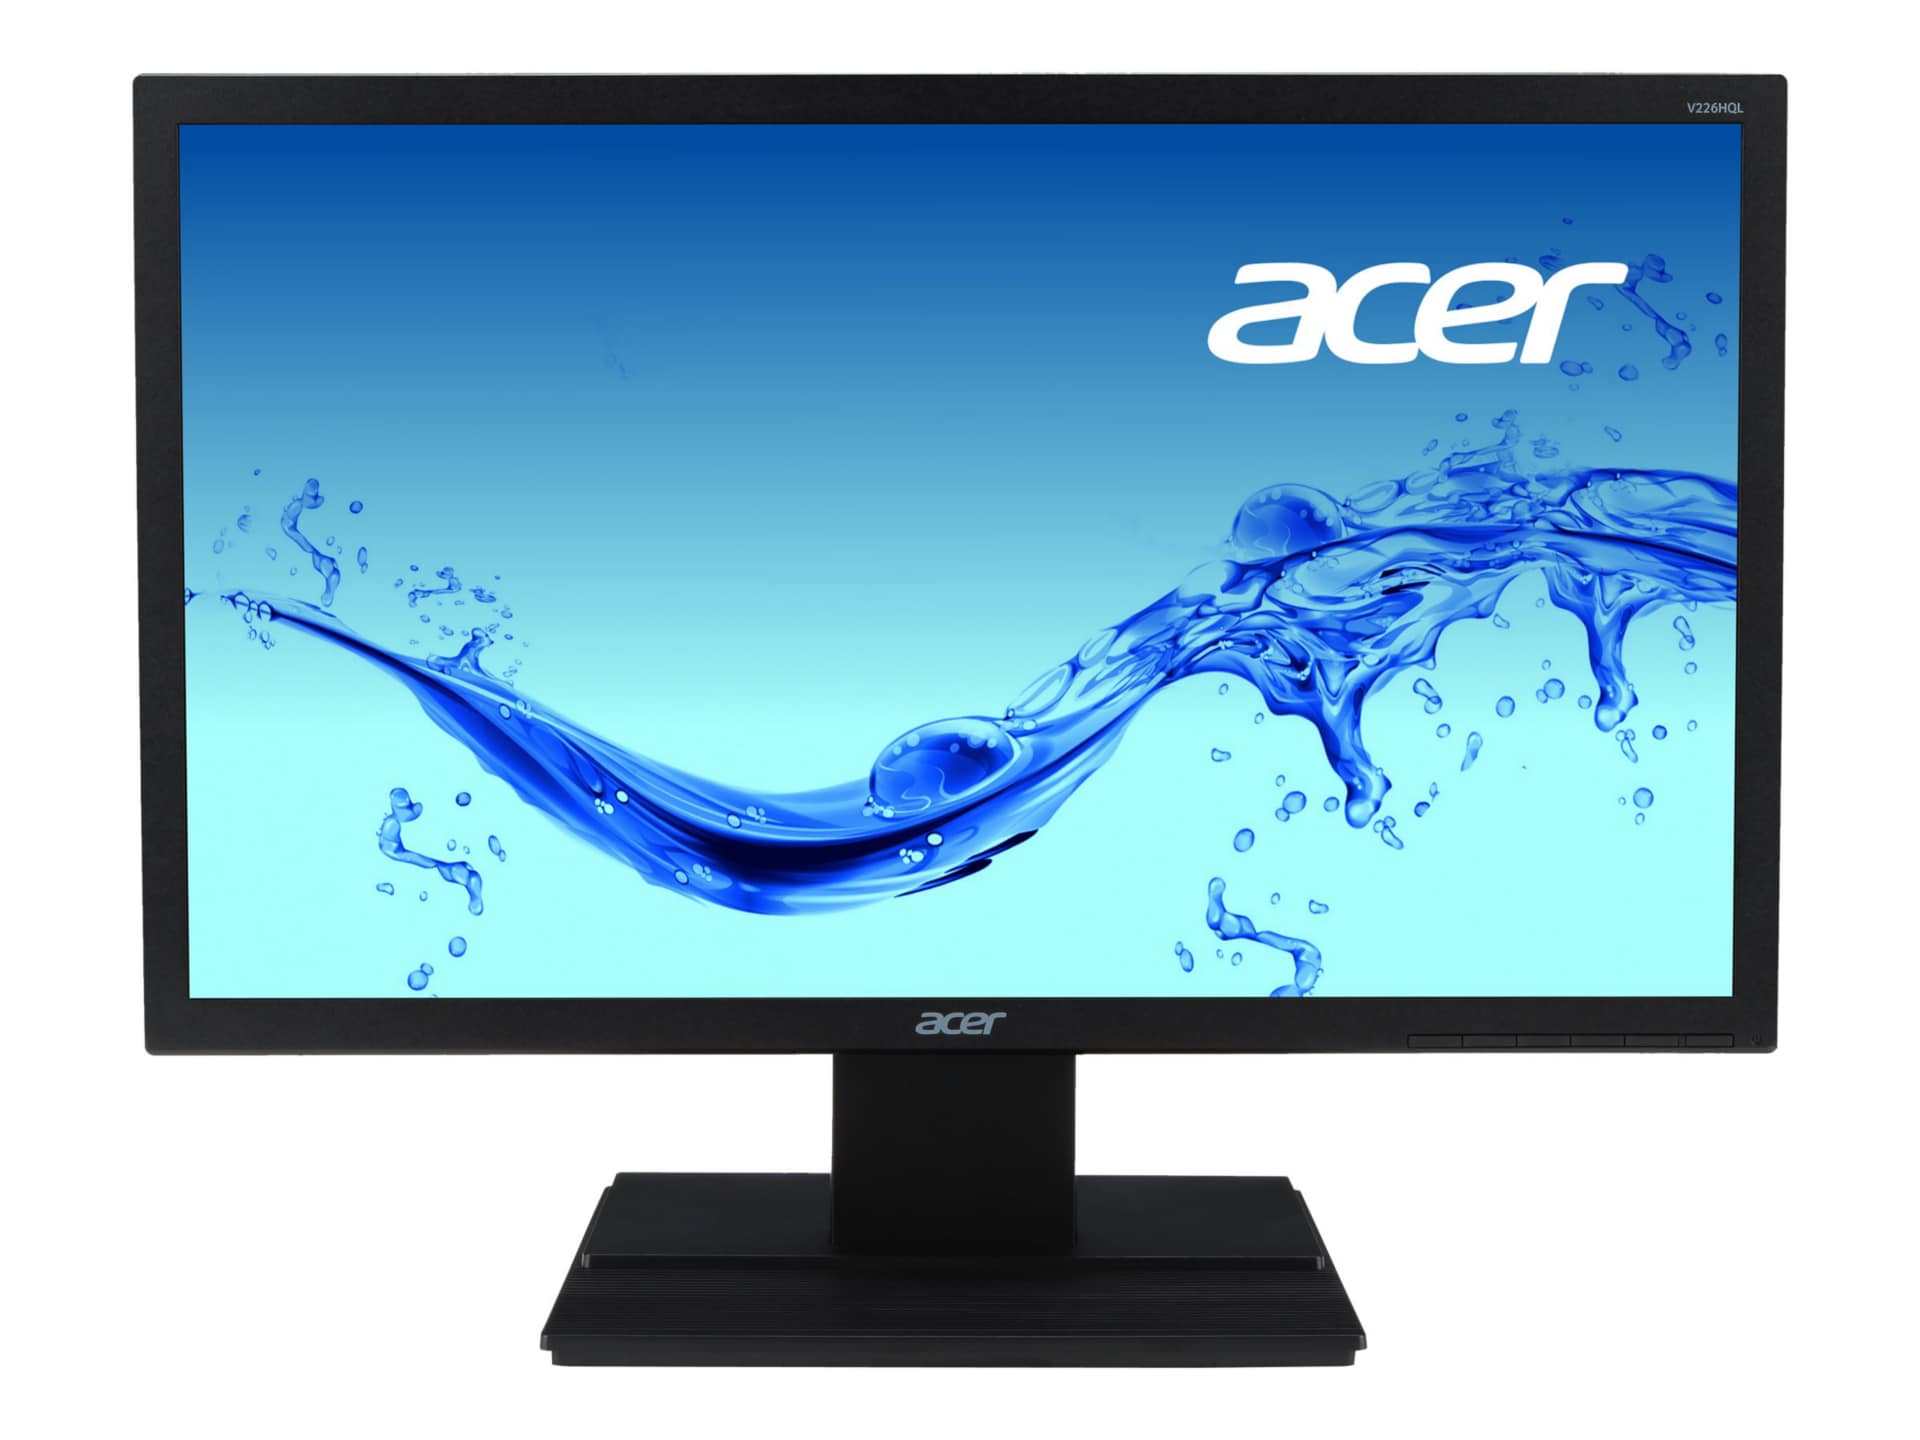 Acer V226HQL Abmdp 21.5" LED-backlit LCD - Black